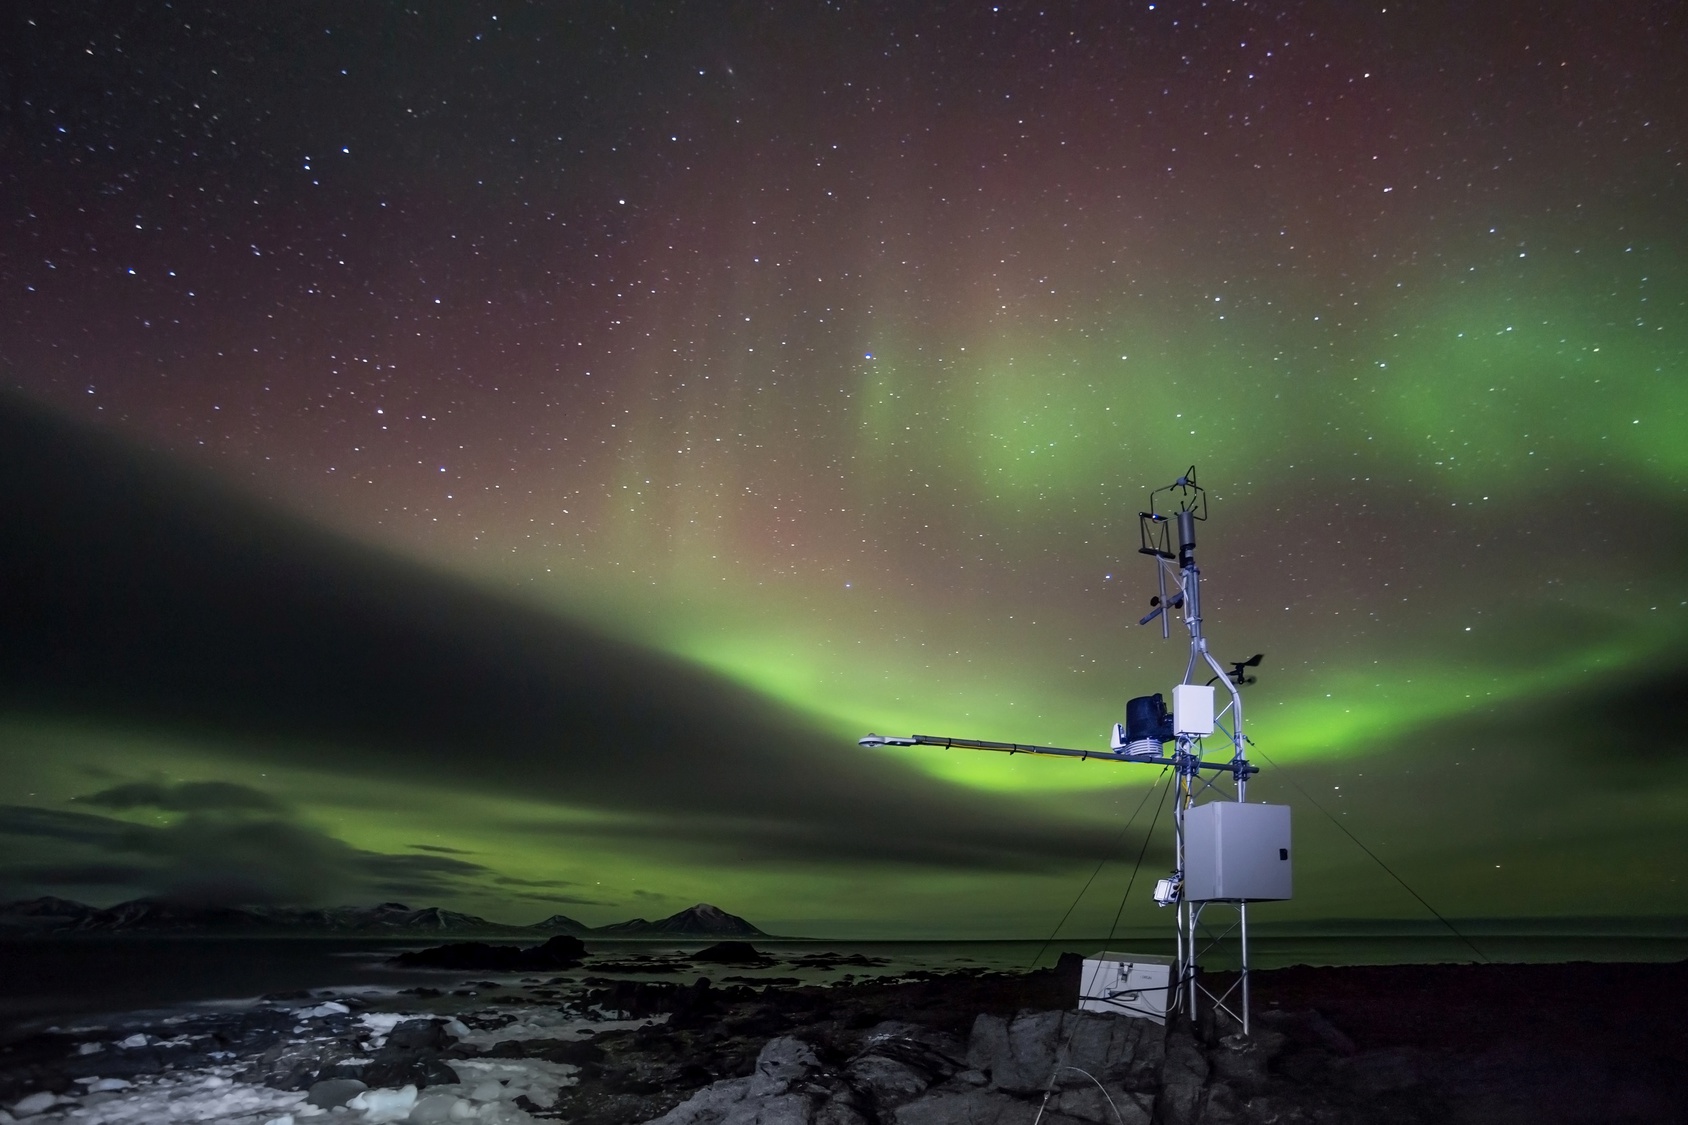 Abgelegene meteorologische Messstation mit Polarlichtern